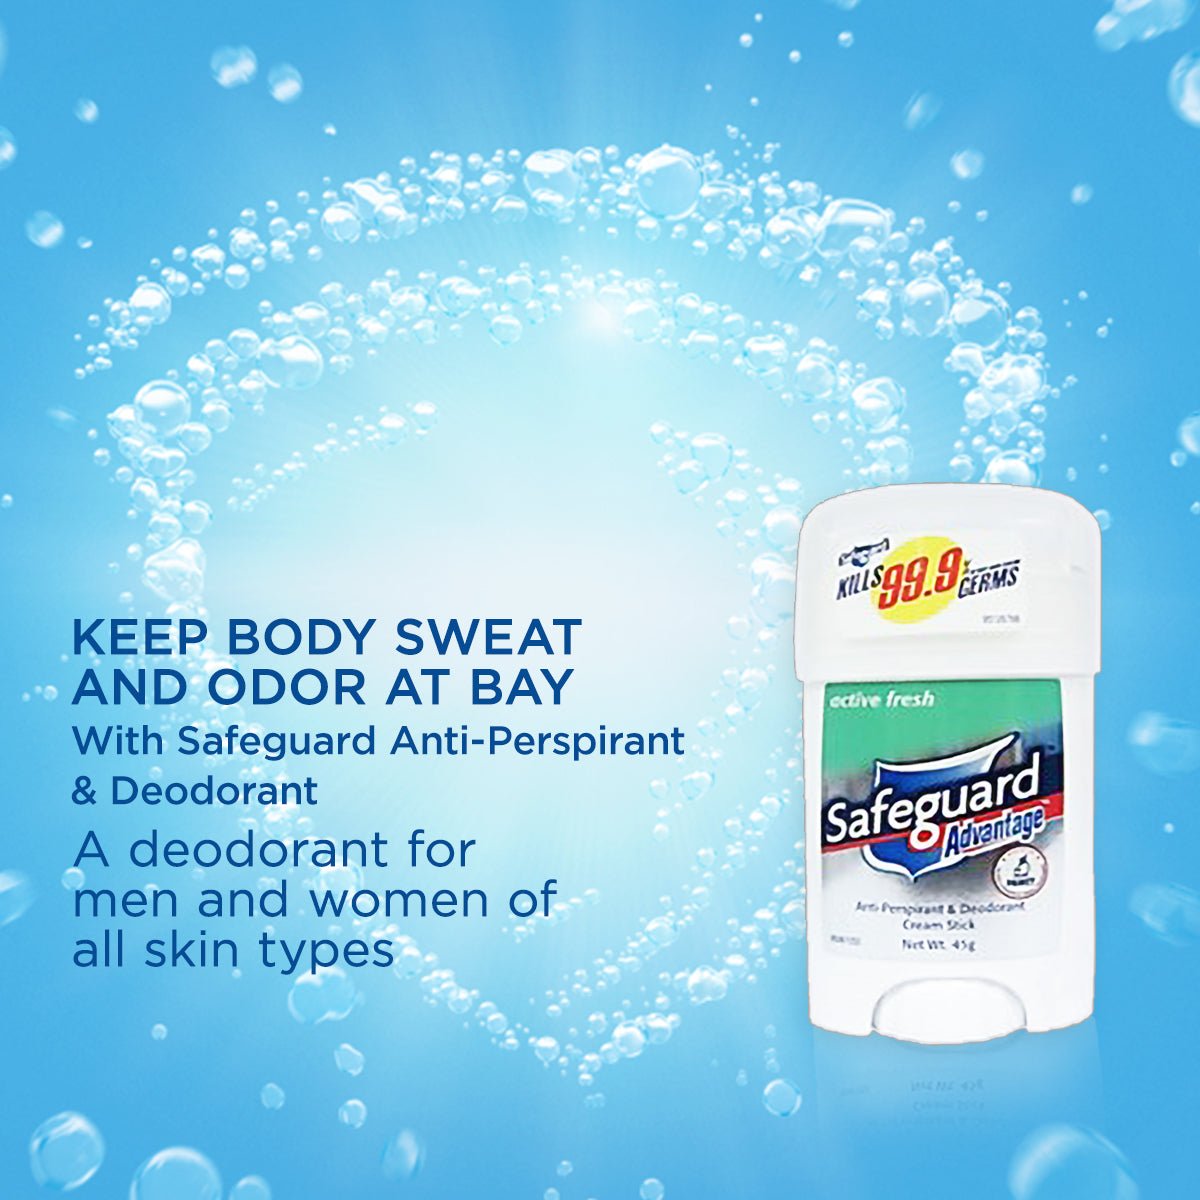 Safeguard Active Fresh Cream Deodorant 45g